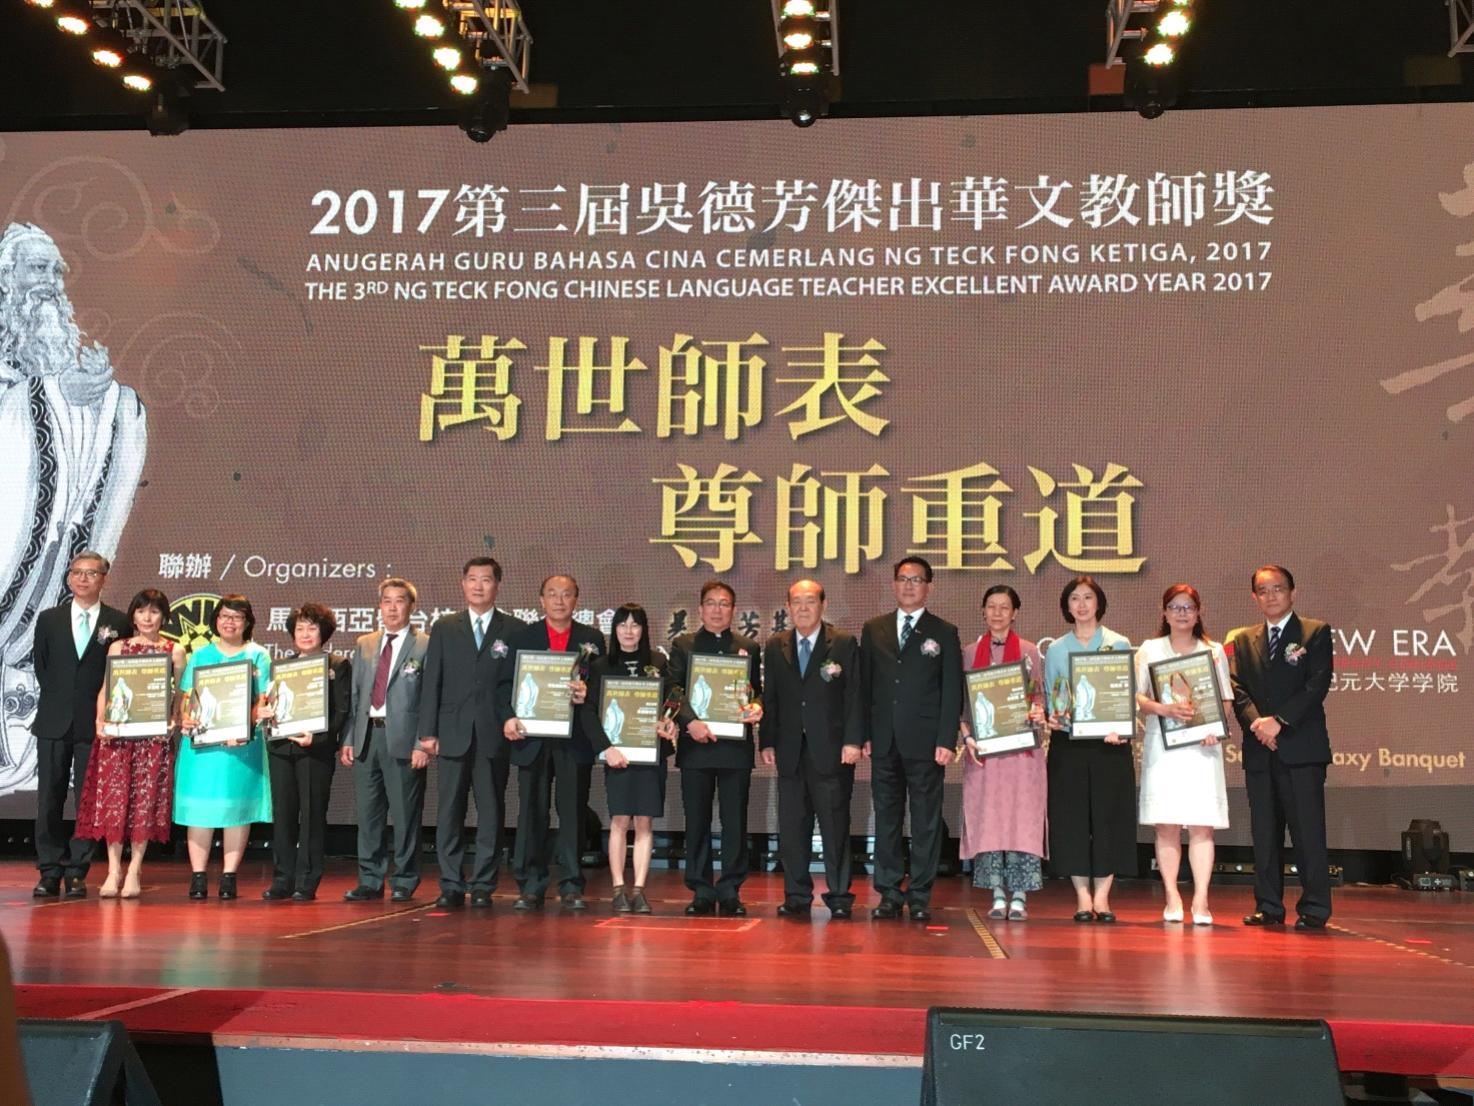 尹公使新垣(立排左6)出席2017第三屆吳德芳傑出華文教師獎及李子松傑出行政人員獎頒獎典禮，並與全體獲獎人員合影。